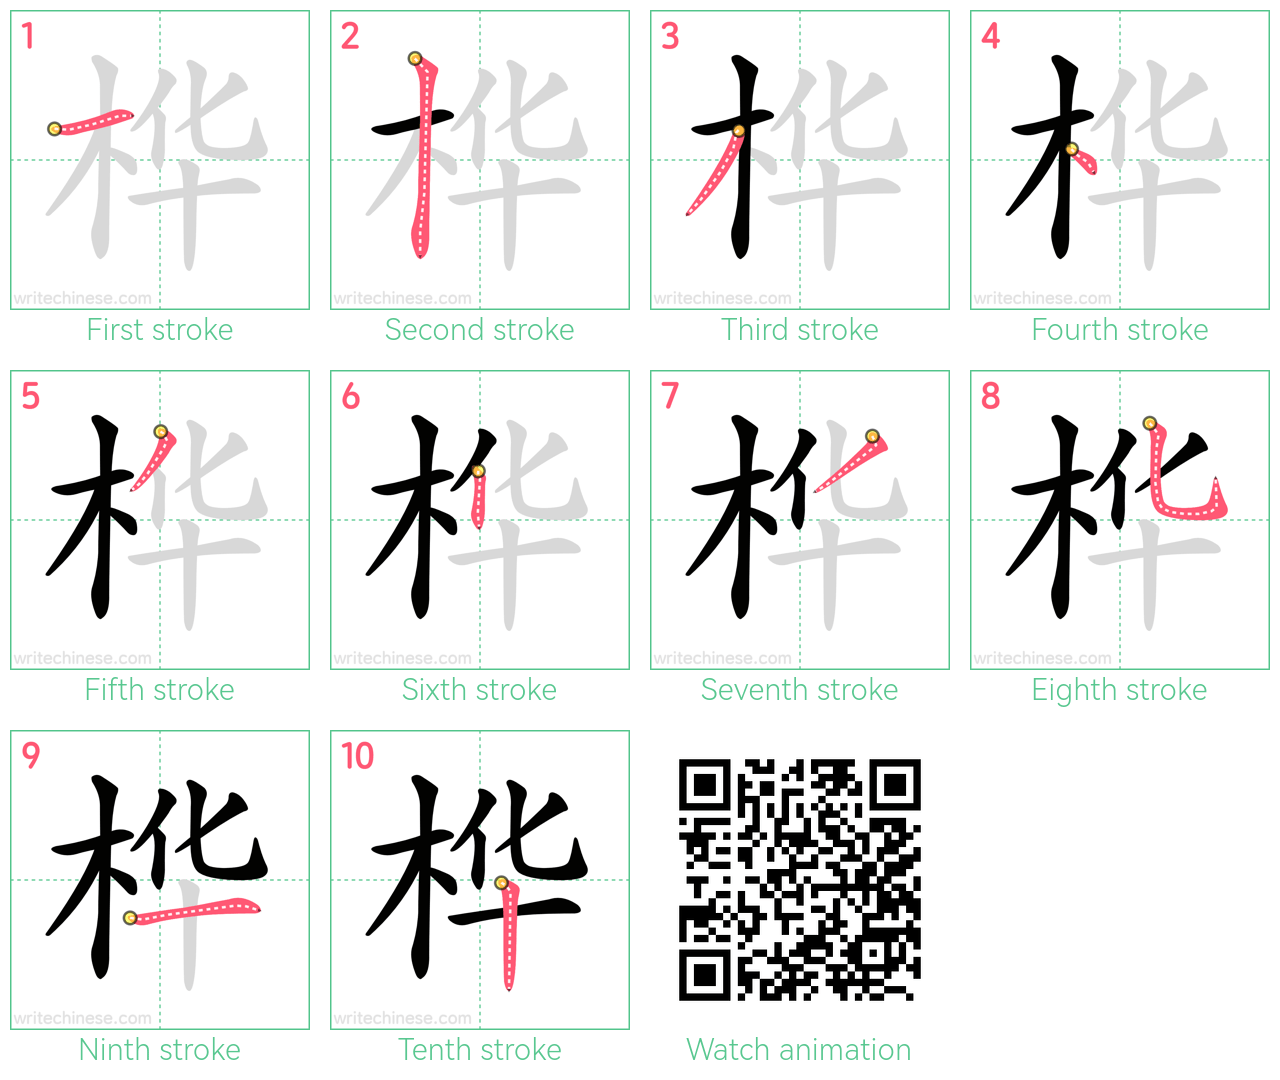 桦 step-by-step stroke order diagrams